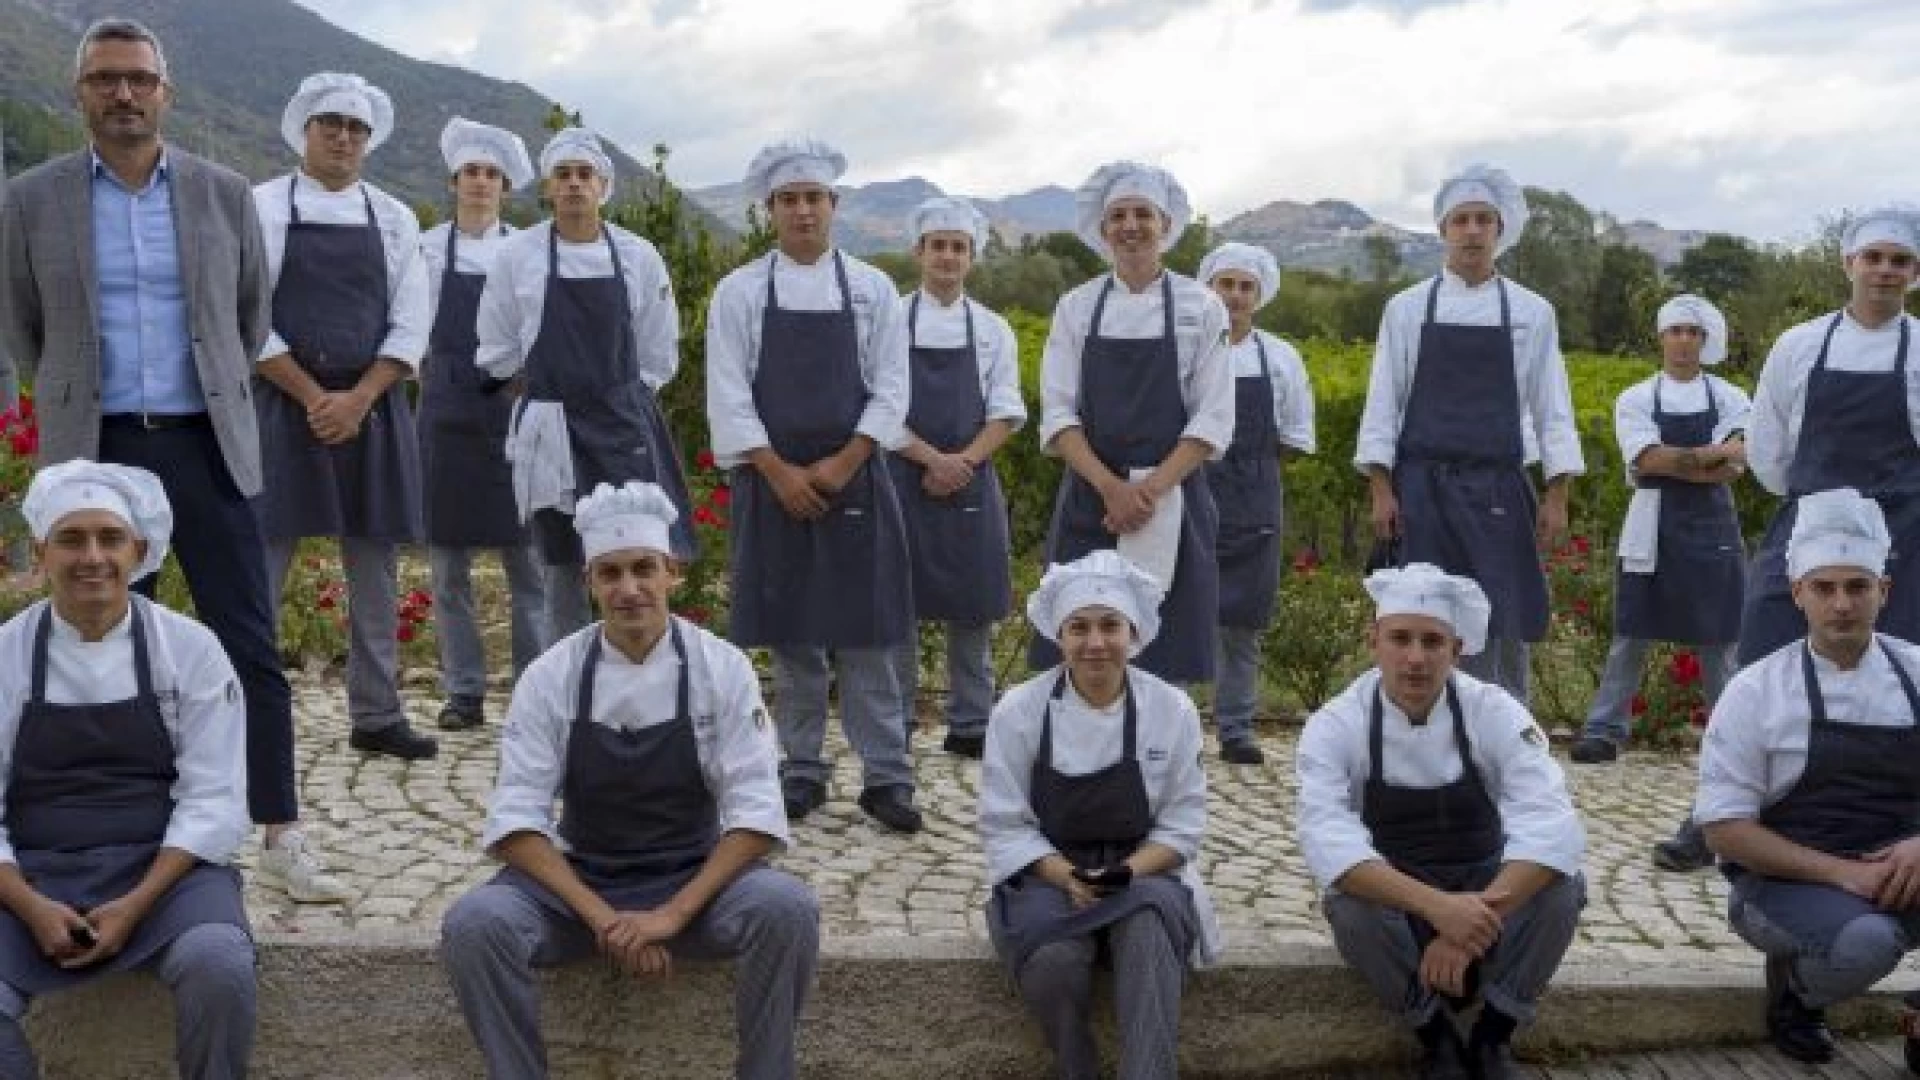 Castel Di Sangro: aperte le selezioni per il 18°esimo corso di cucina professionale promosso dall’Accademia Niko Romito.